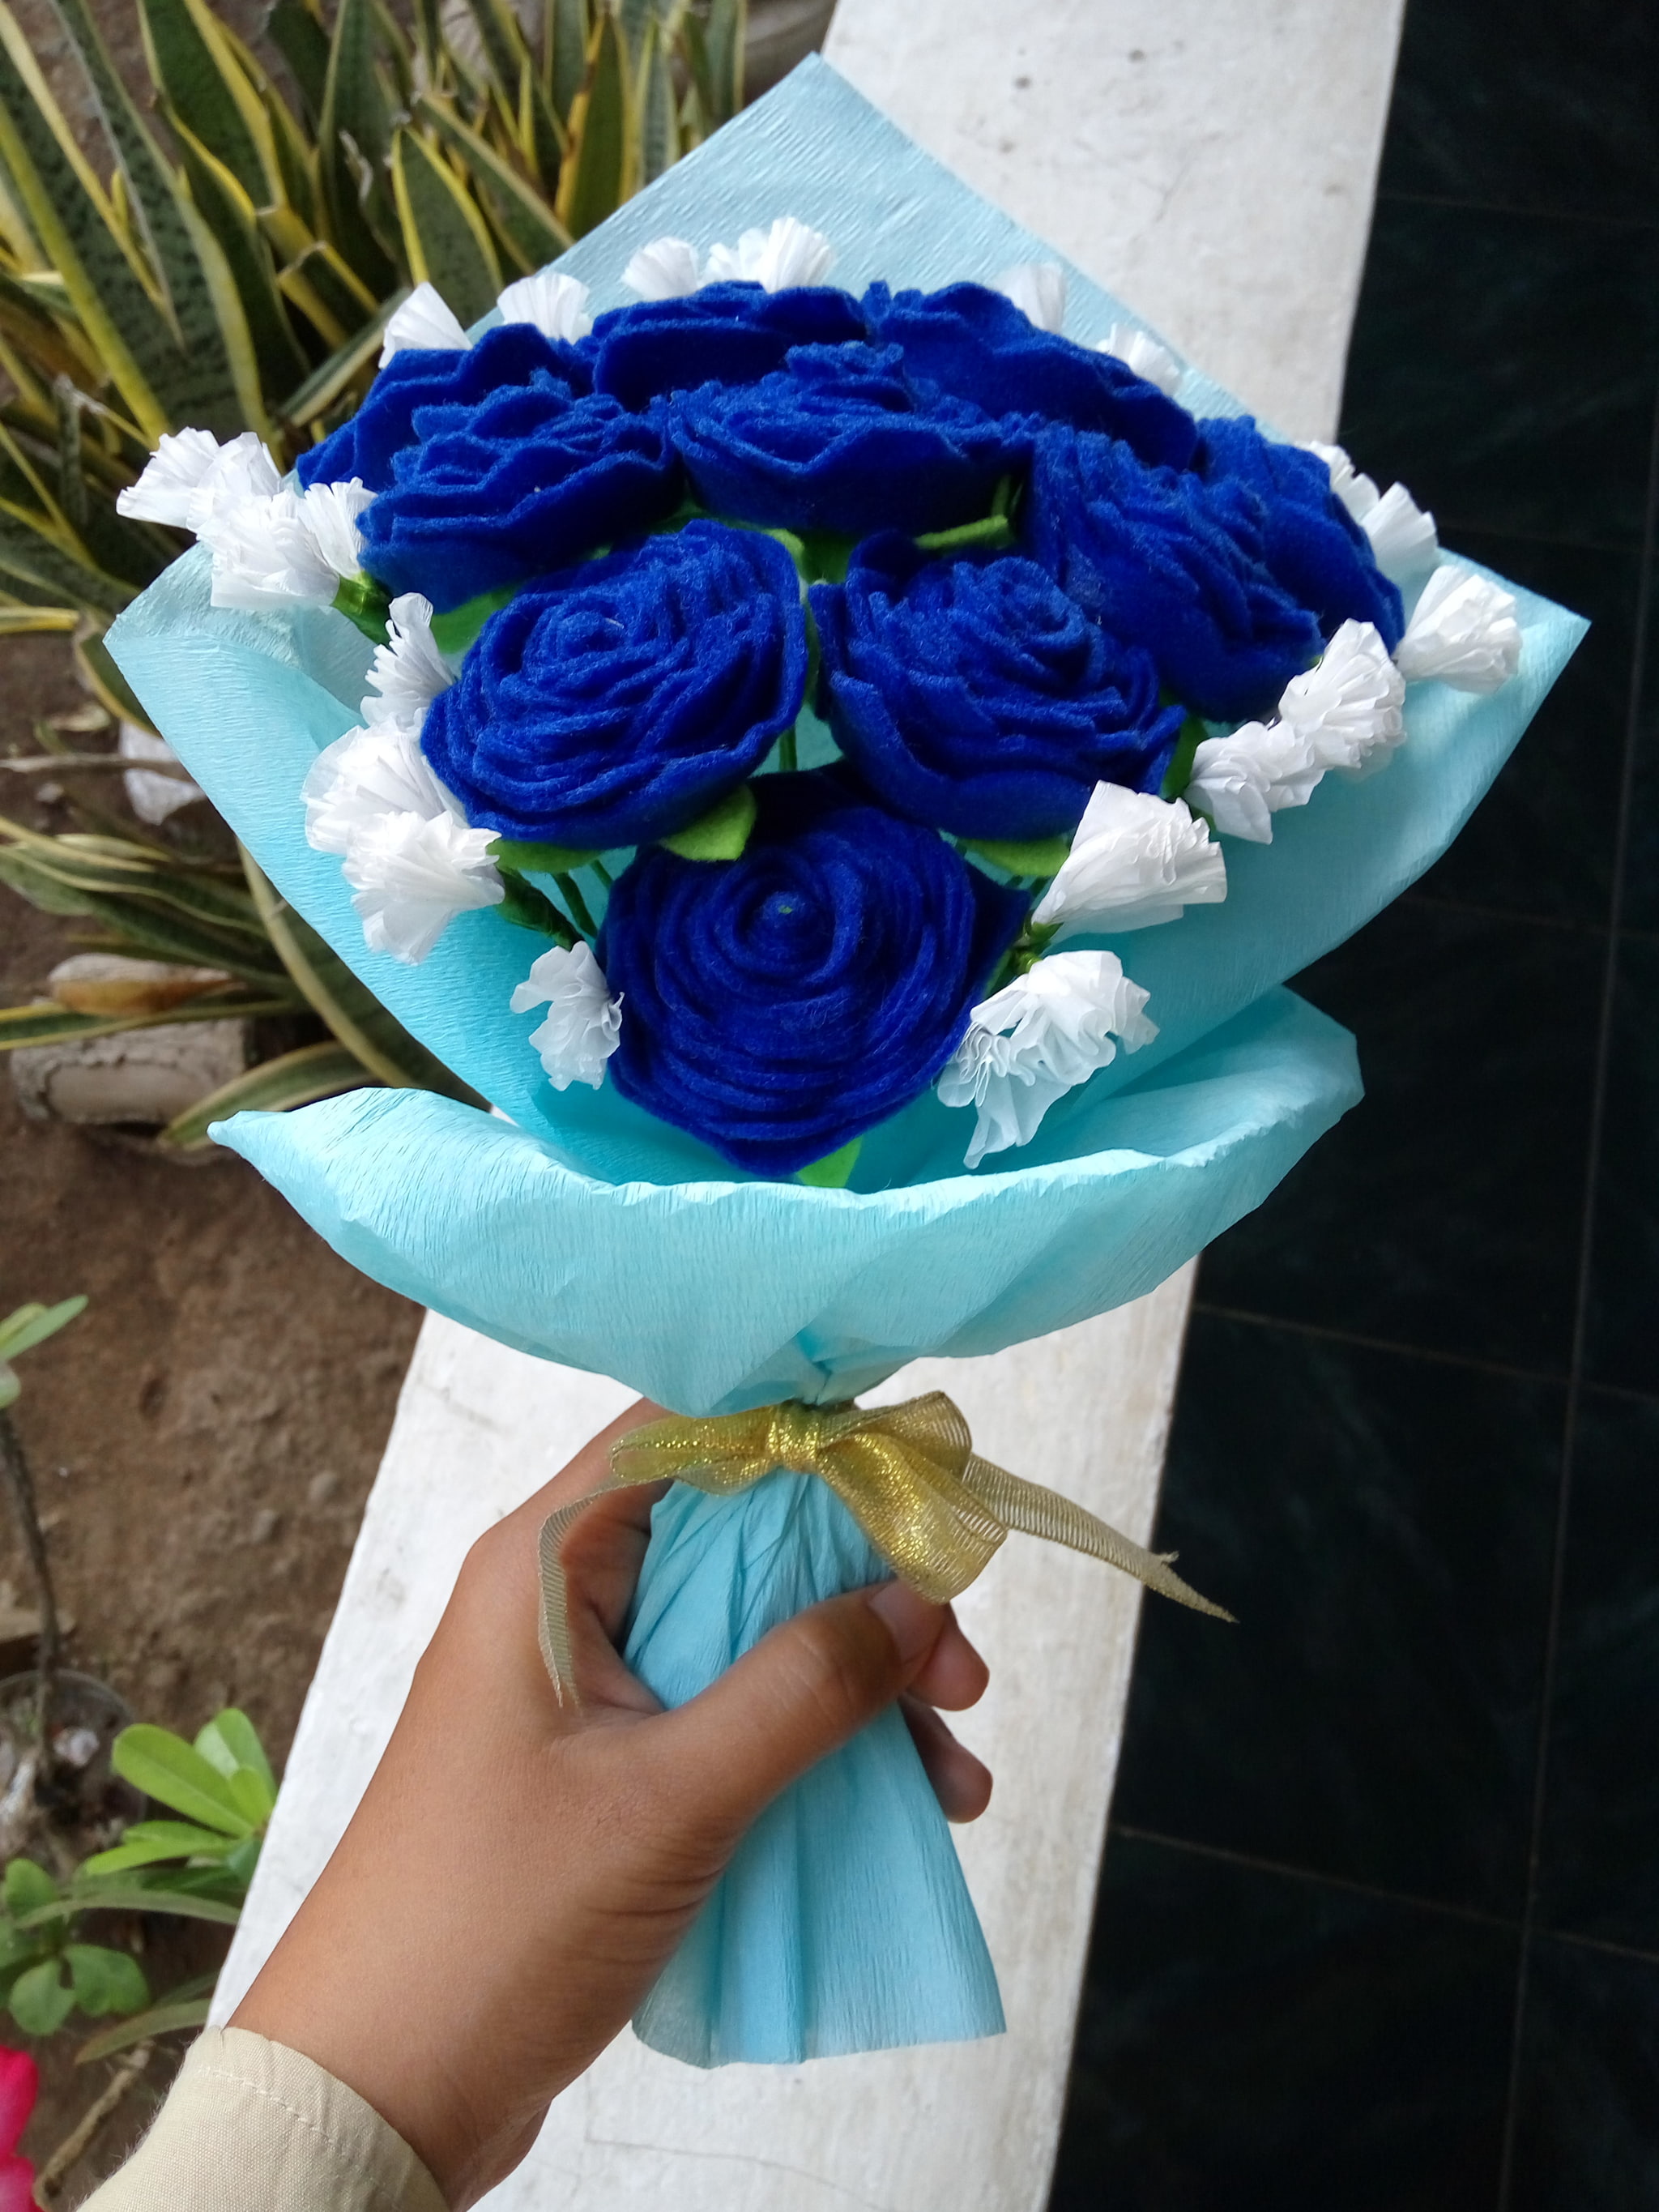 wallpaper biru dongker,flower,rose,blue,blue rose,bouquet